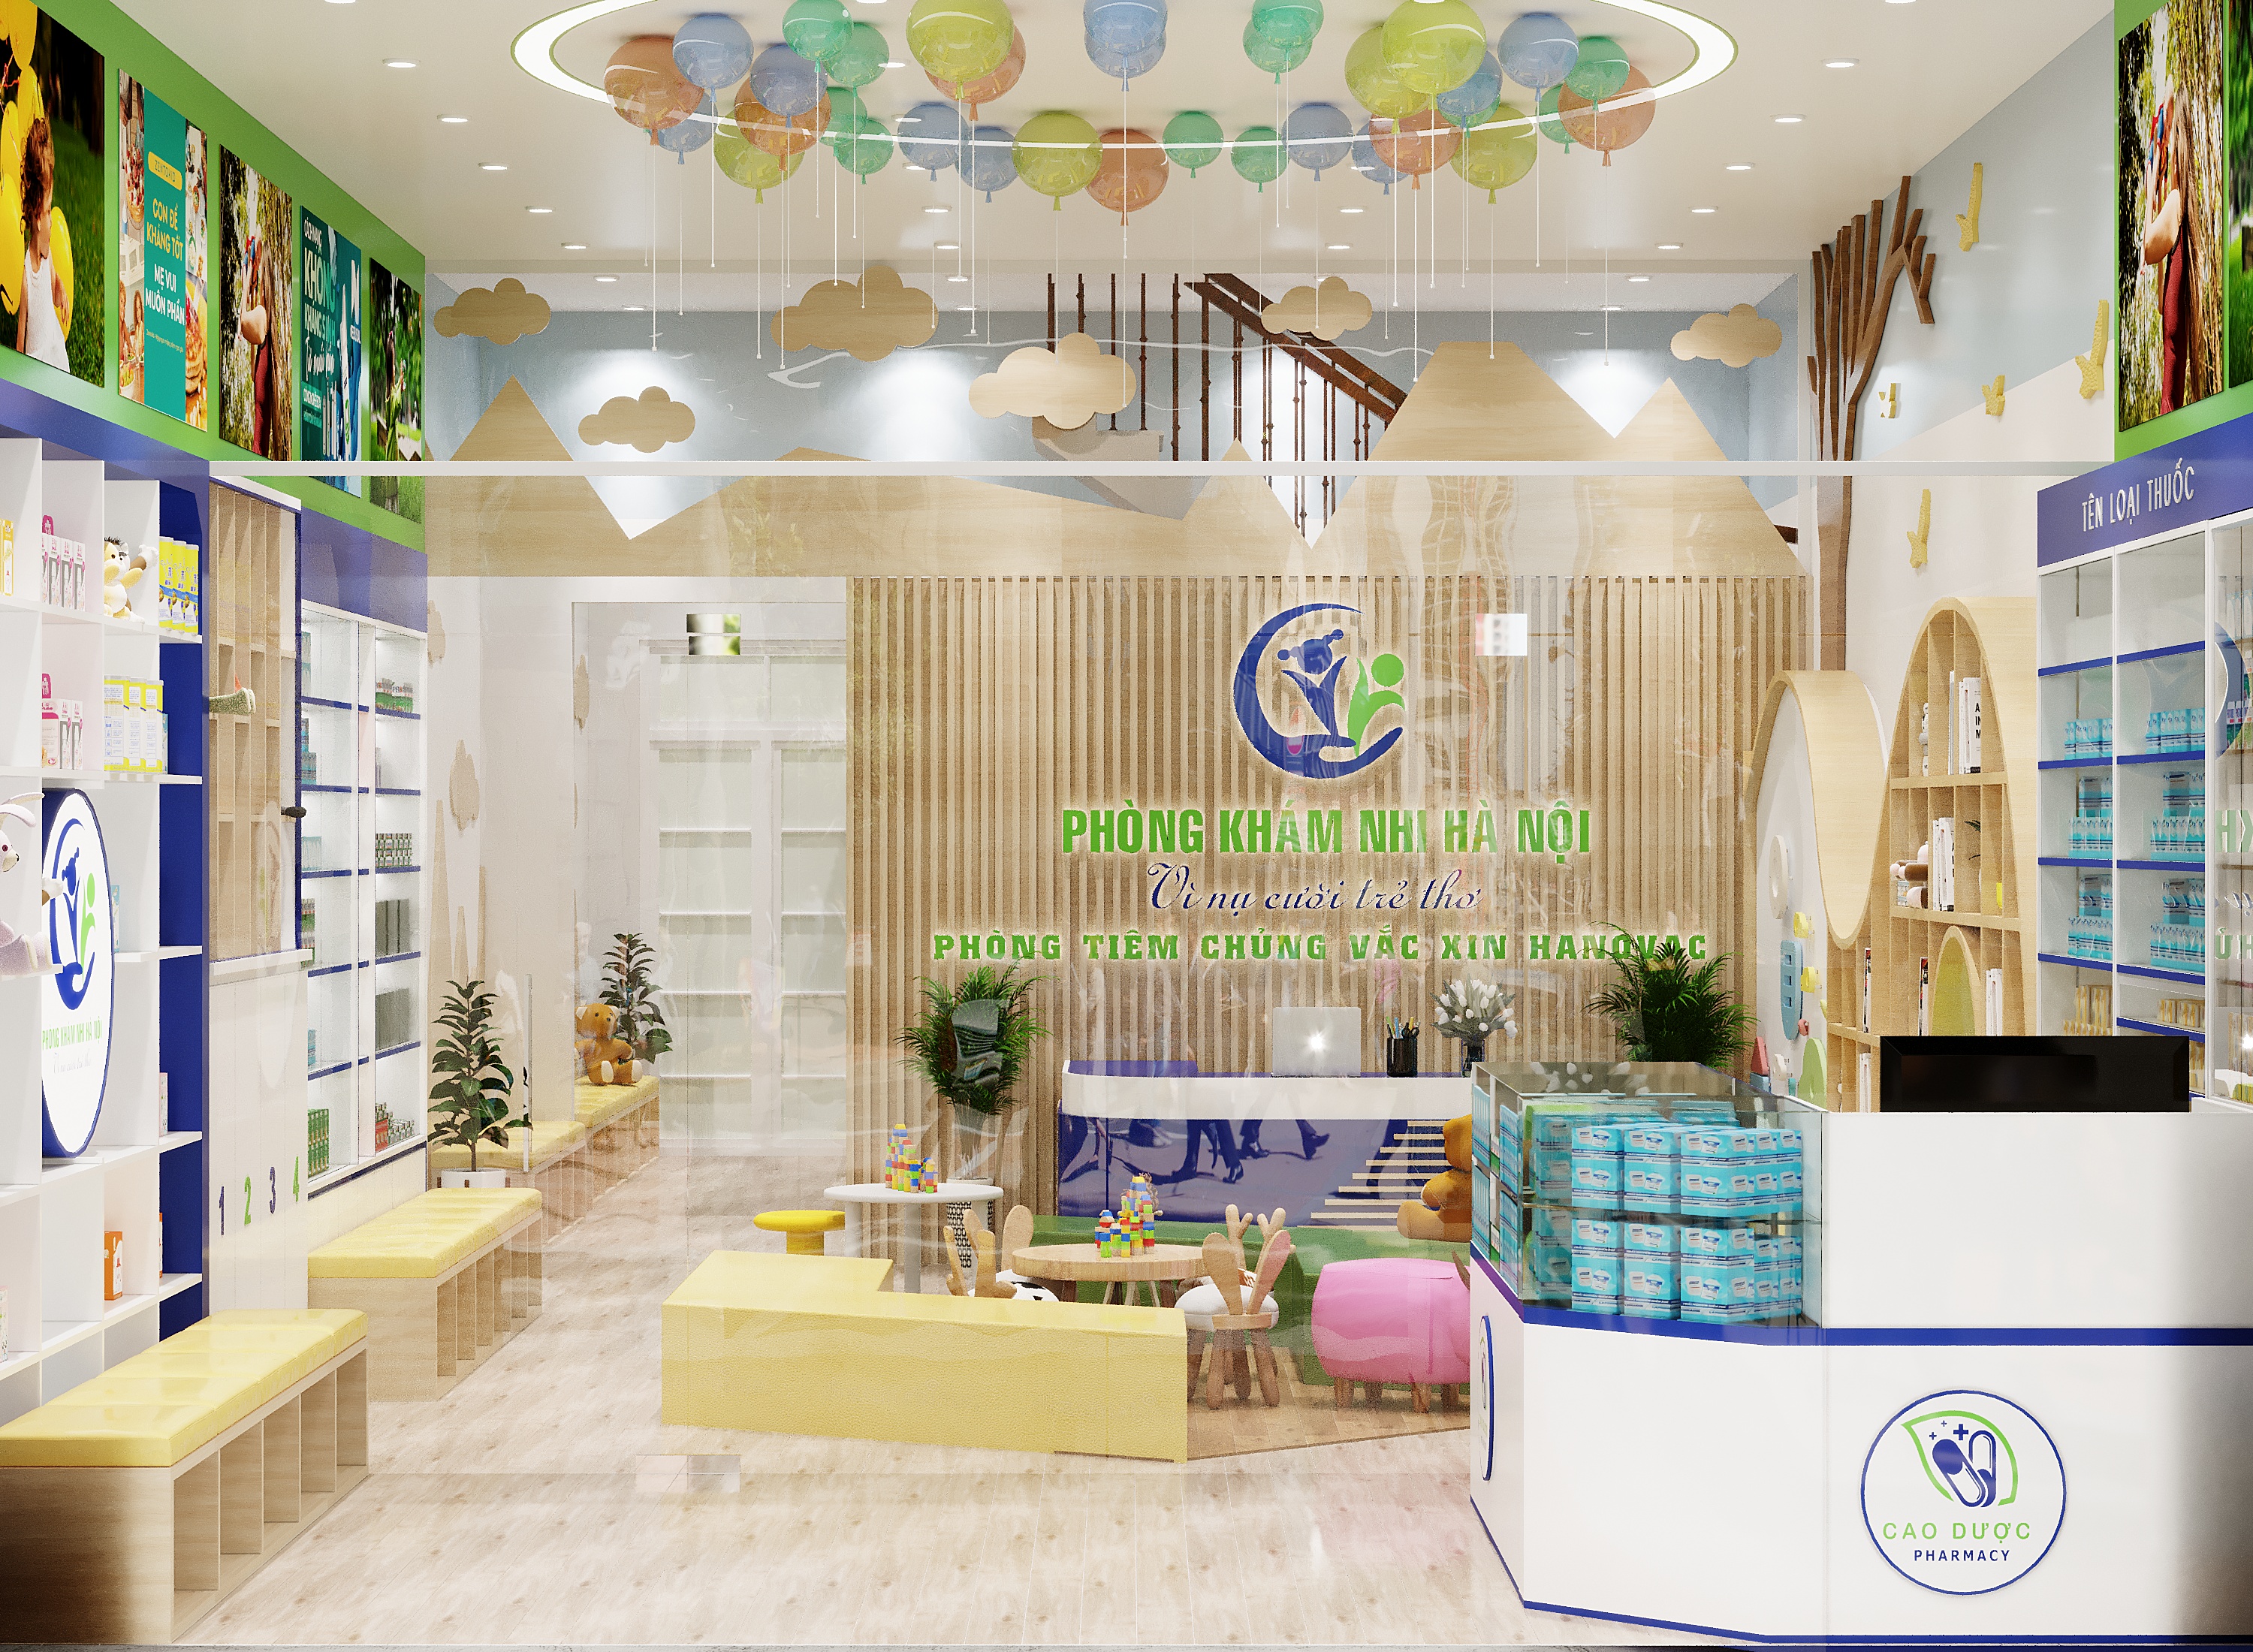 Thiết kế nội thất Shop tại Hà Nội Phong Khám Nhi Khoa Hà Nội 1665525828 3